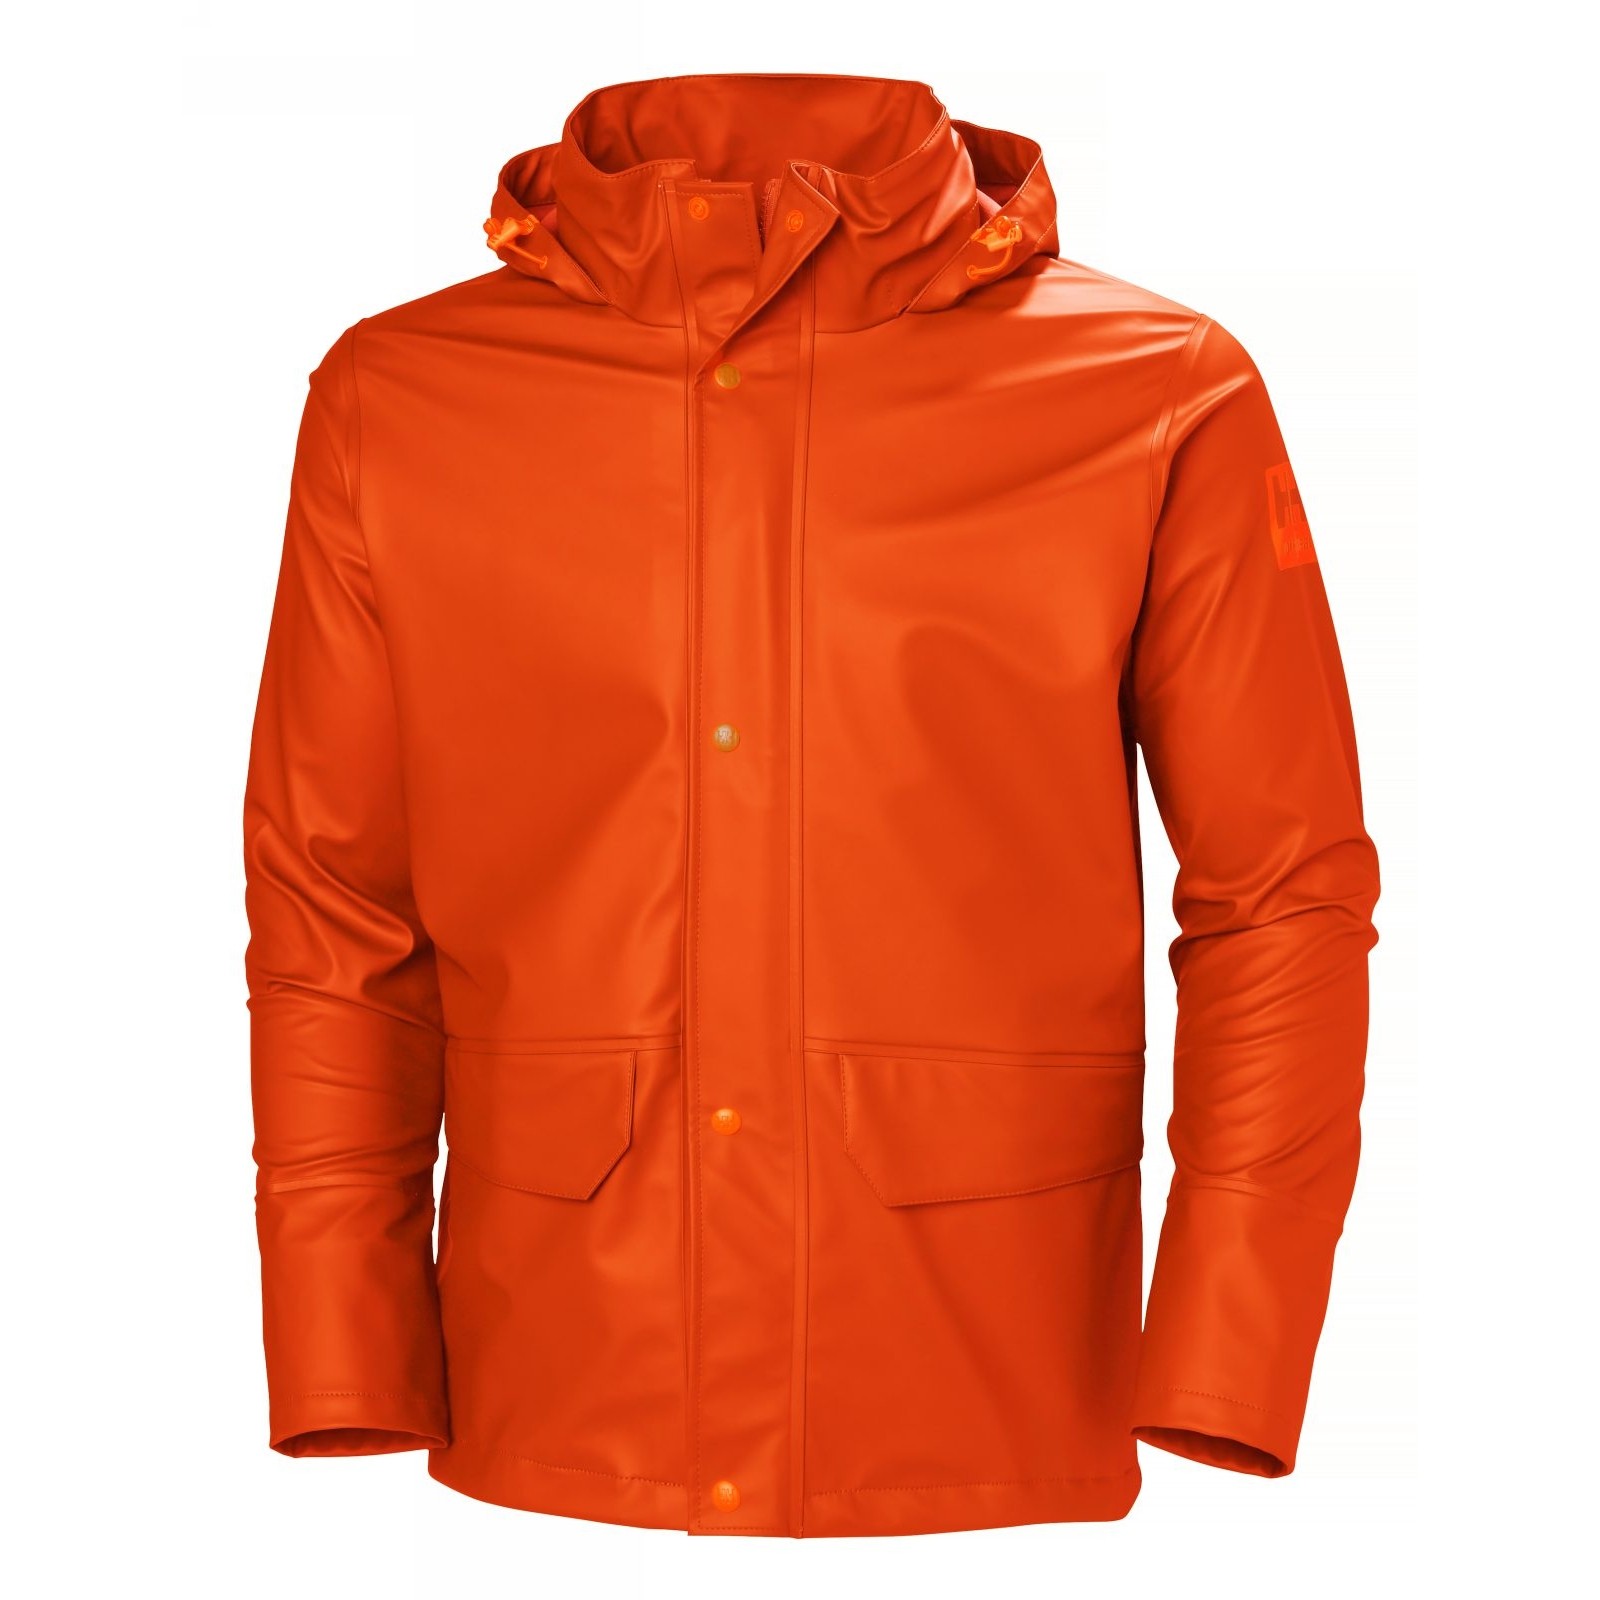 Куртка водонепроницаемая оранжевая Helly Hansen Gale Rain размер XL, Osculati 24.502.14